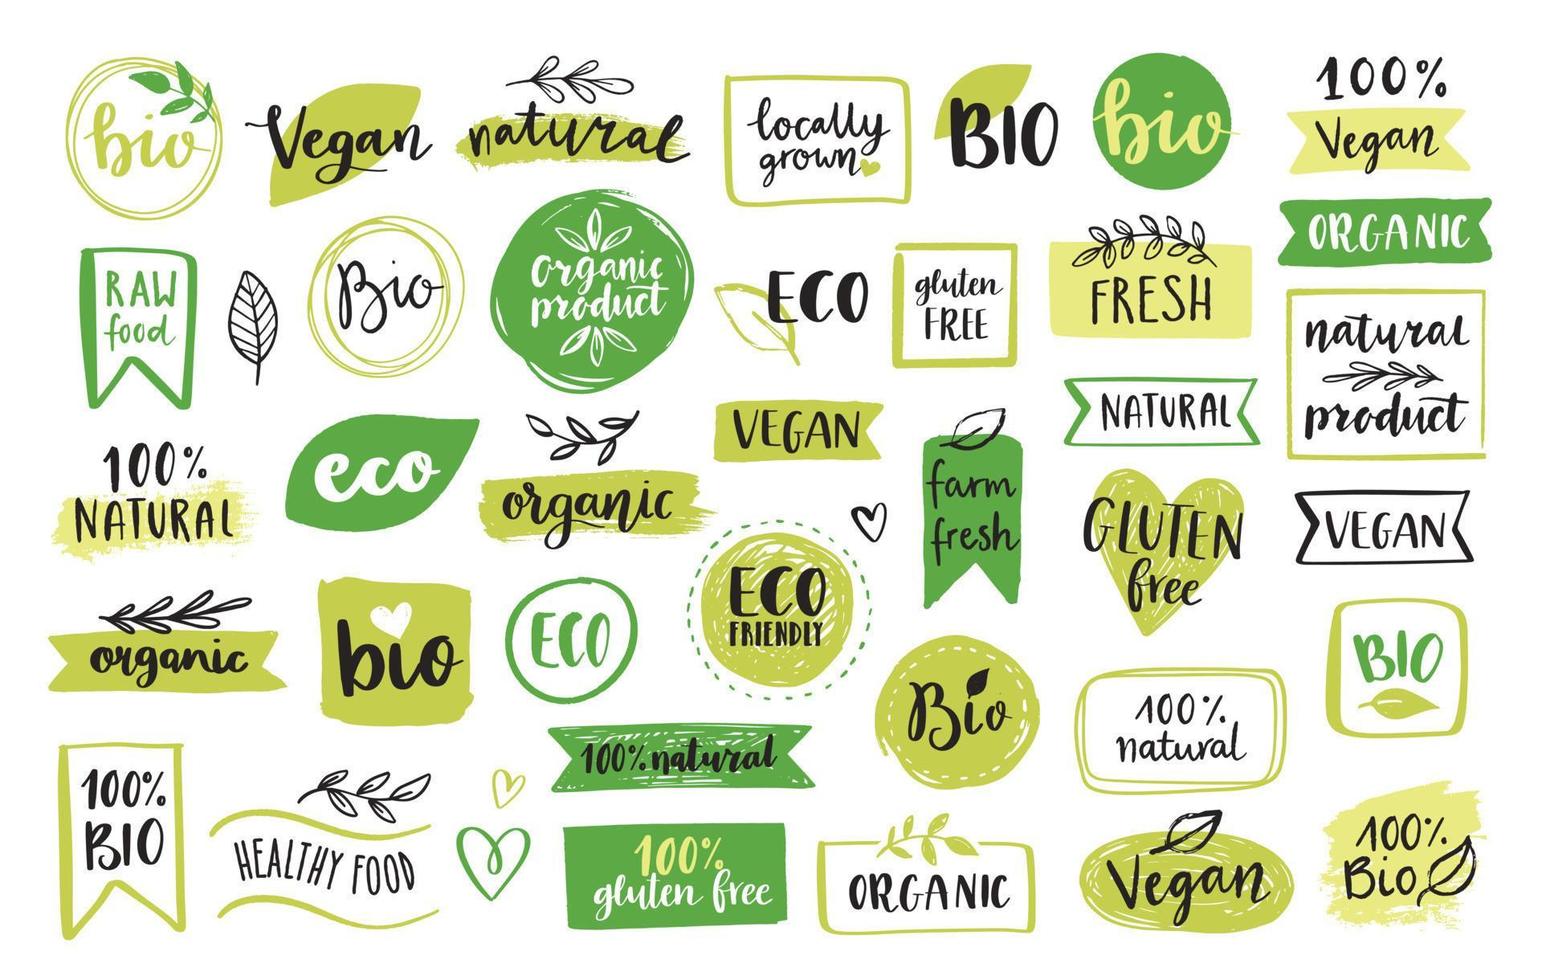 Symbole und Elemente für Bio-Lebensmittel, Öko, Veganer und Naturprodukte für den Lebensmittelmarkt, E-Commerce, Verpackungen von Bio-Produkten, Förderung eines gesunden Lebens, Restaurant. handgezeichnete Vektordesign-Elemente. vektor